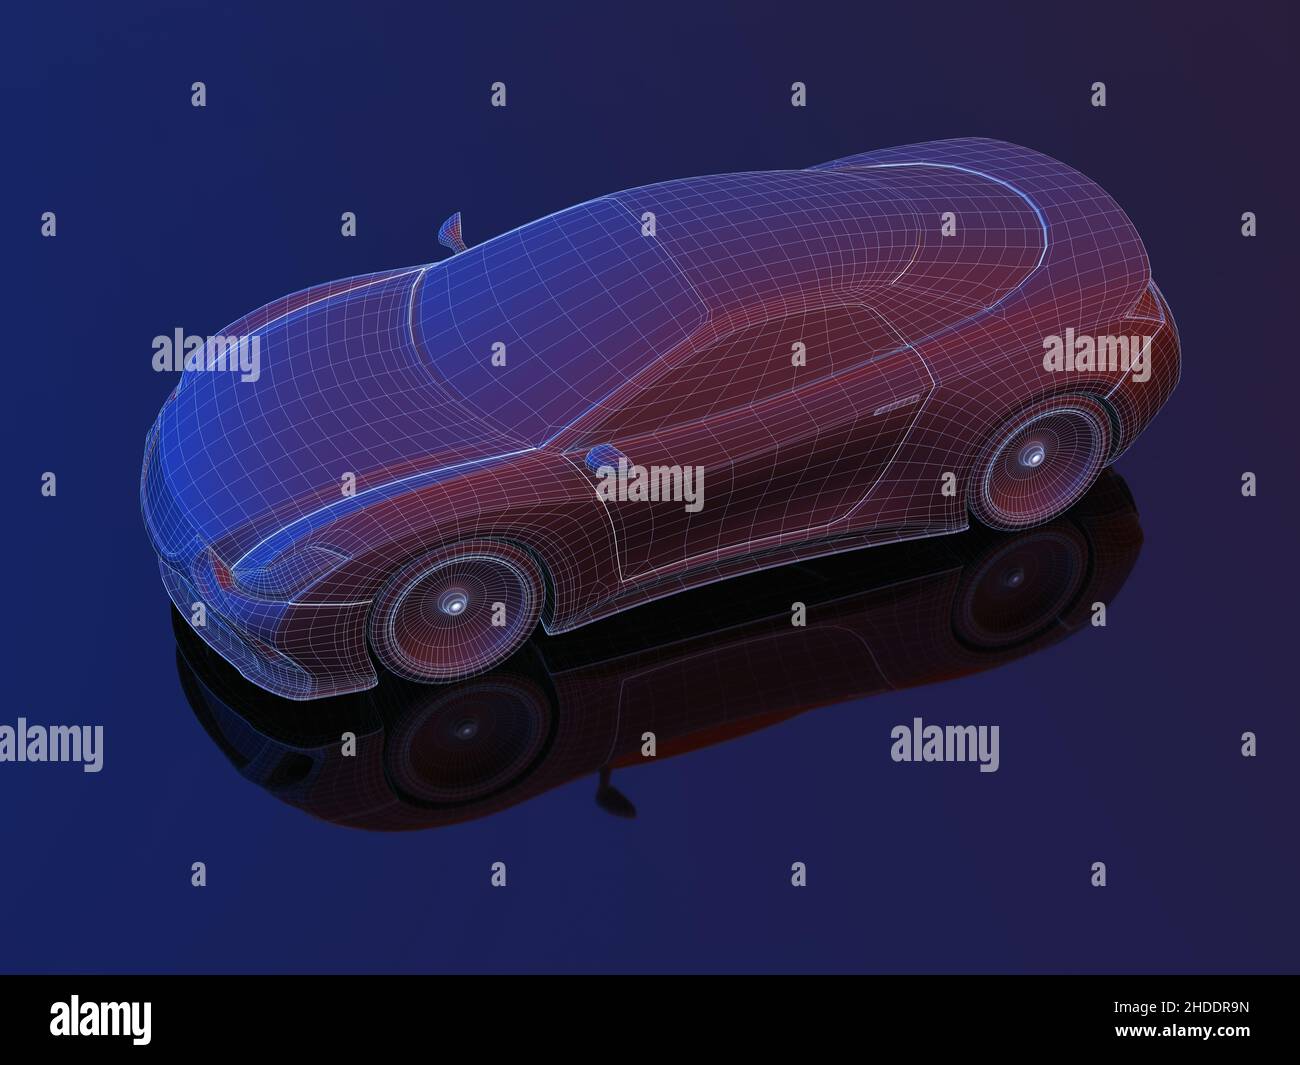 Concepto de Blueprint de coche deportivo fabricado en software 3D. Imagen conceptual de prototipos y ensayos aerodinámicos. Ruta de recorte incluida. Foto de stock